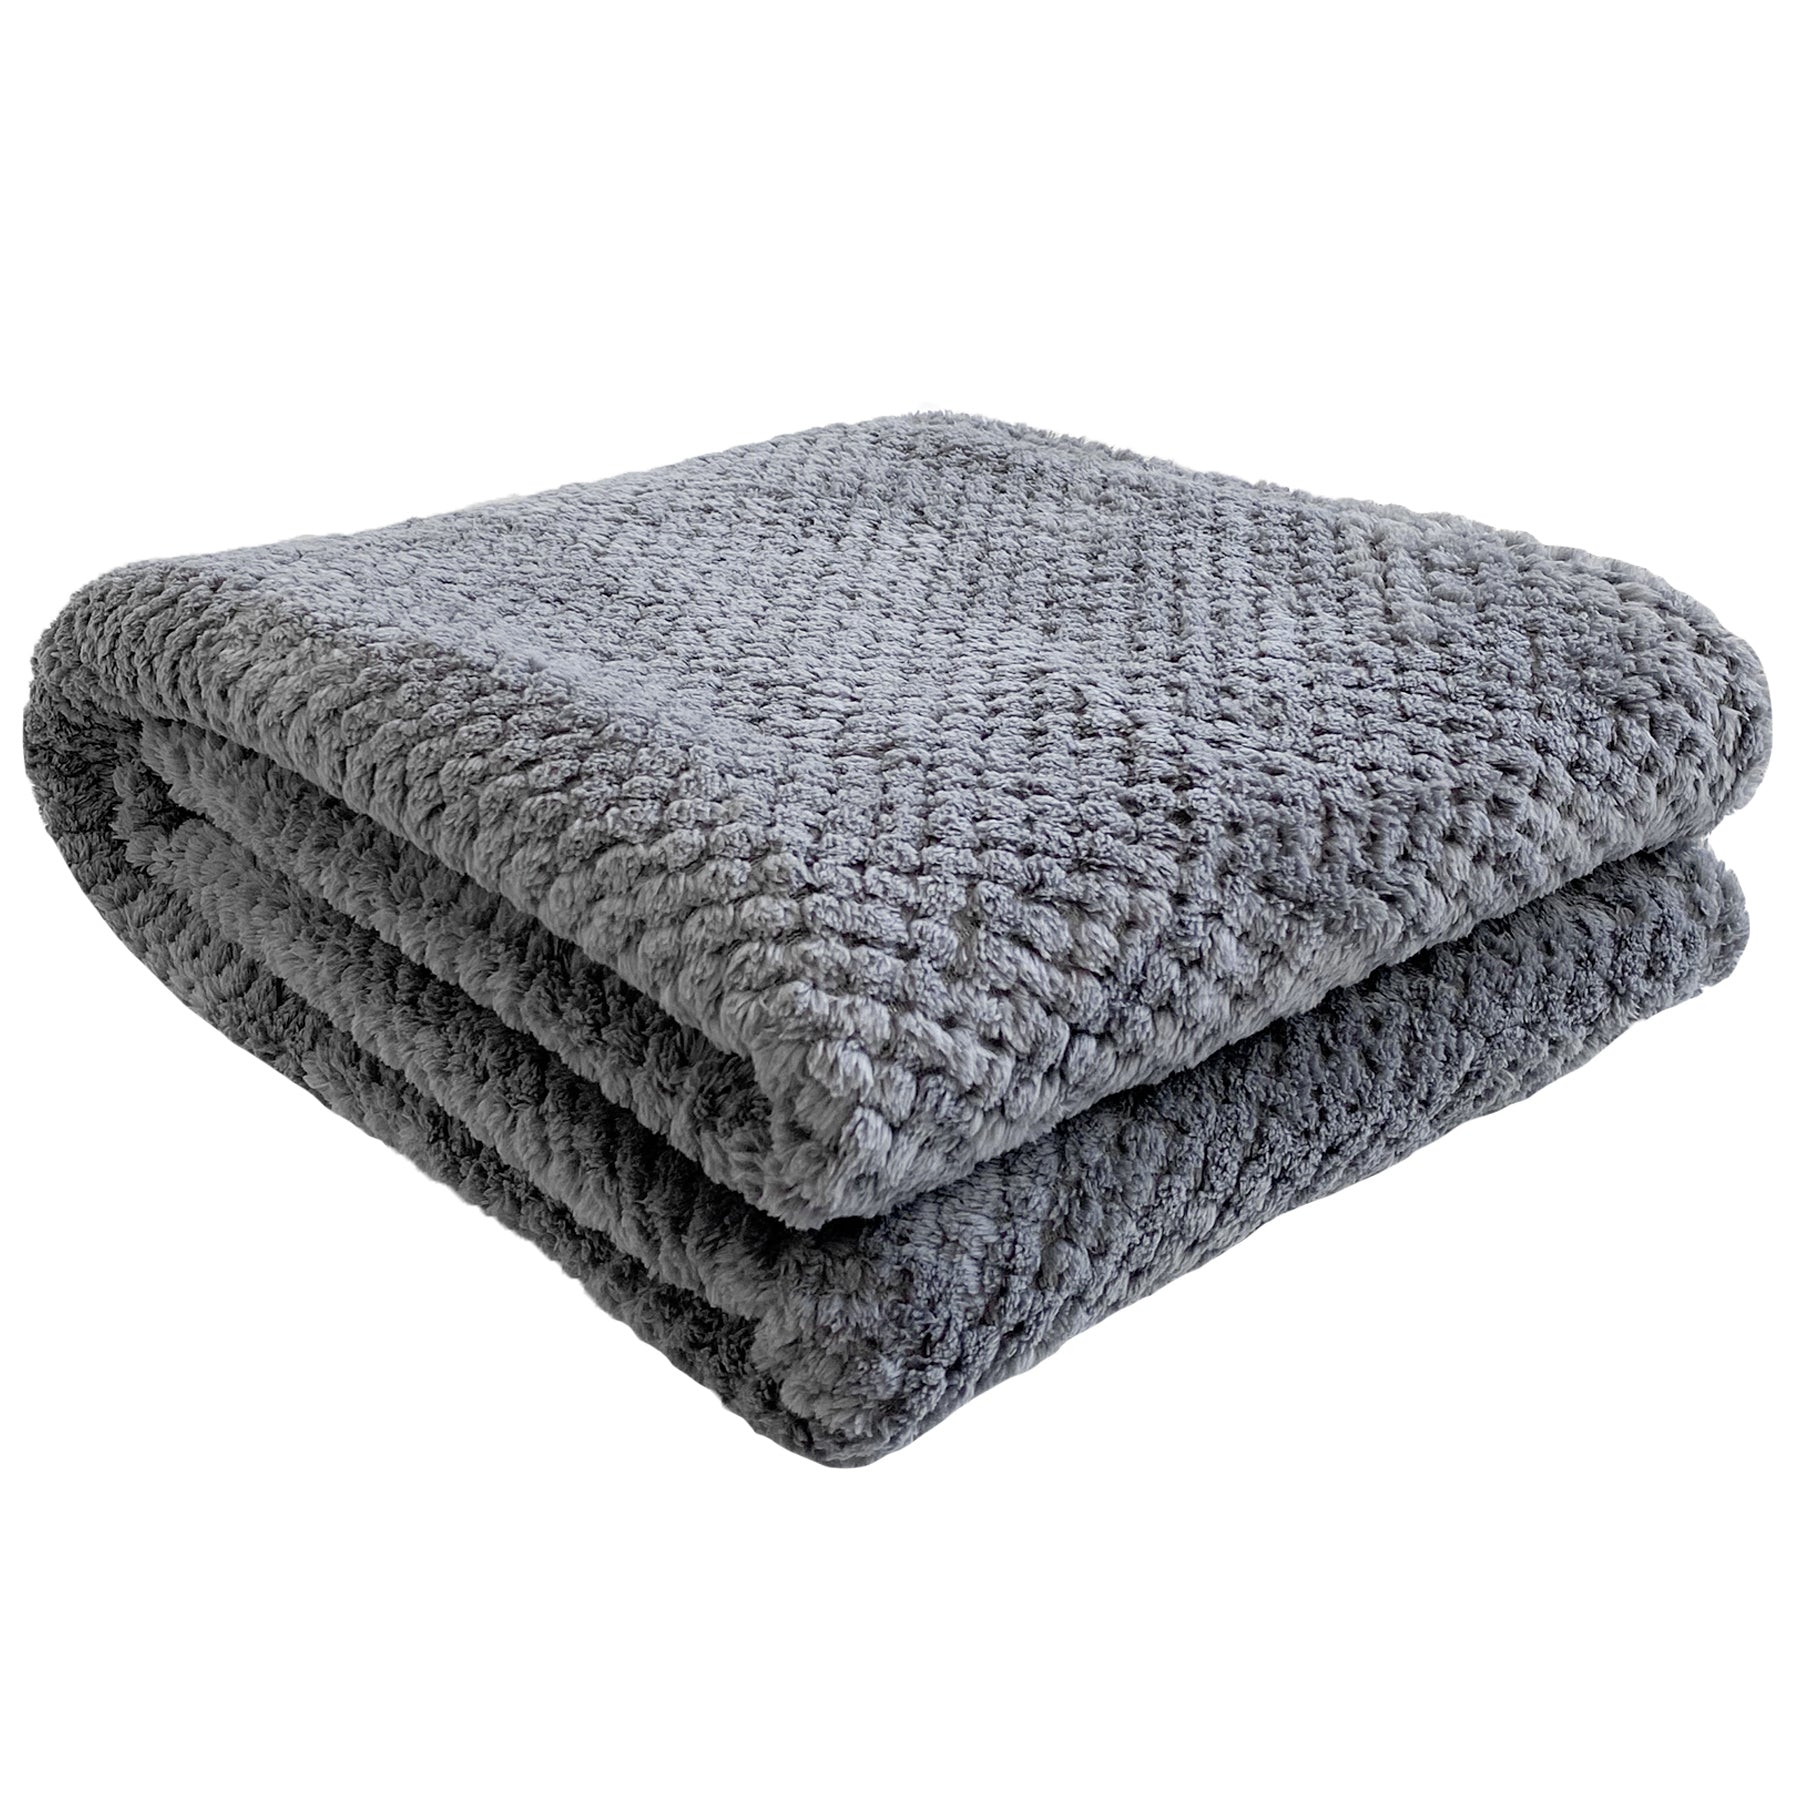 Kozy Throw - Textured Gray | Throws & cushions | Boutique Kozy